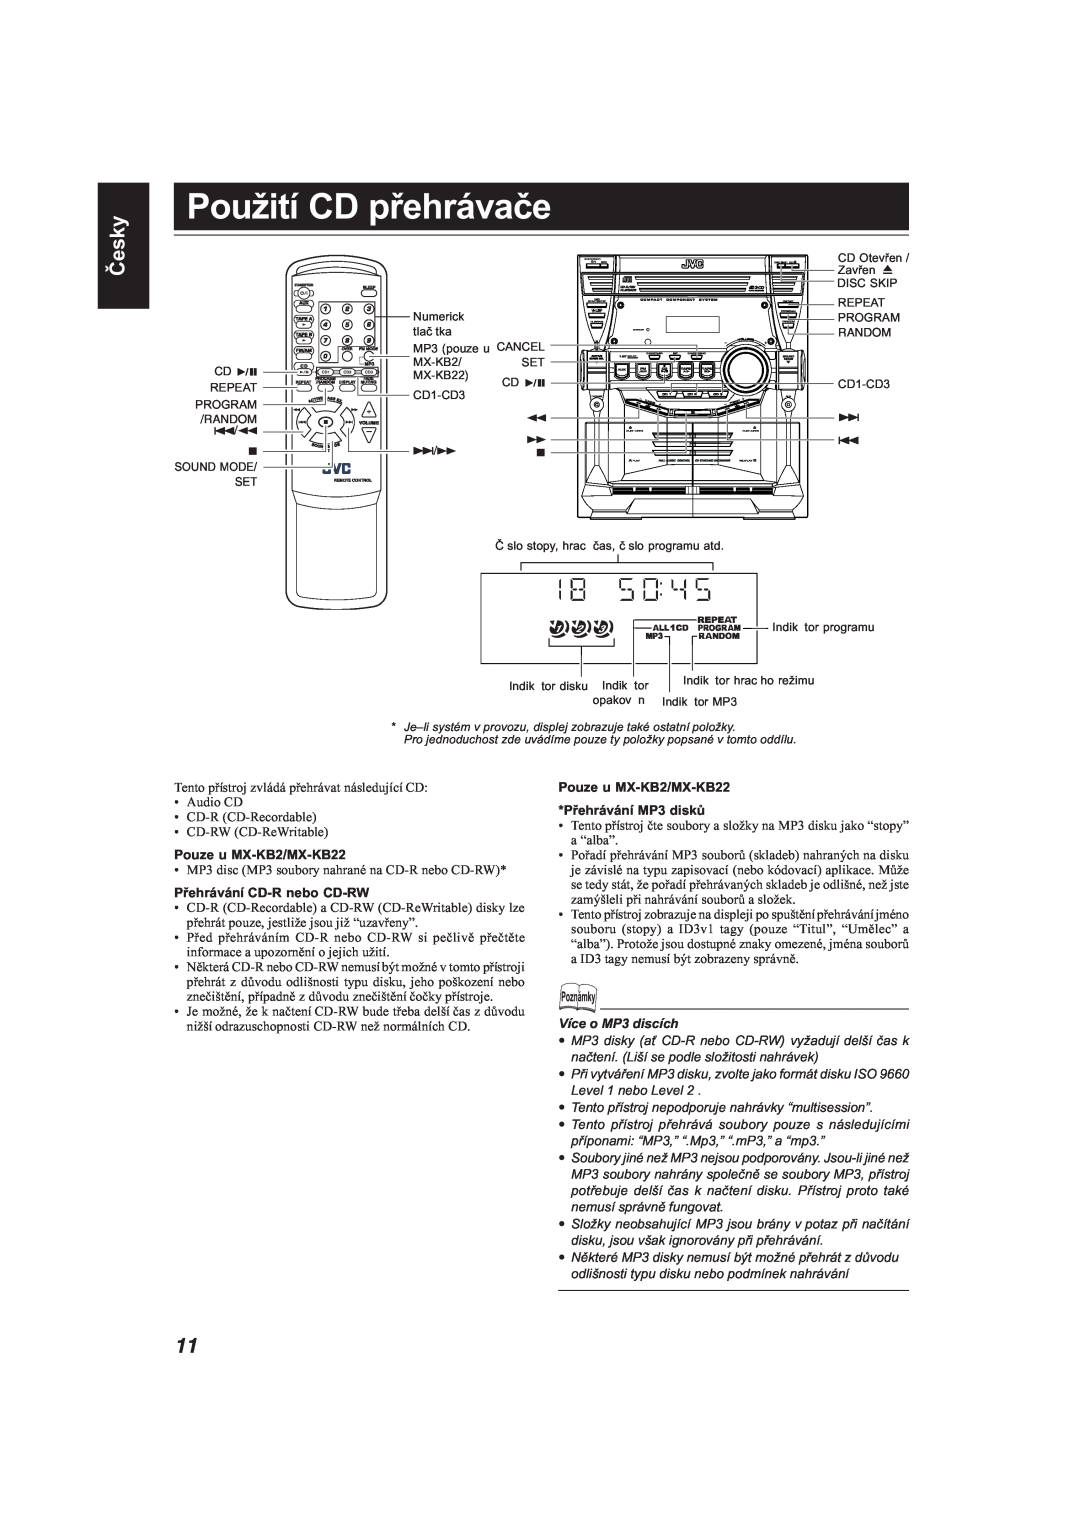 JVC MX-KB11 manual Použití CD přehrávače, Česky, Pouze u MX-KB2/MX-KB22, Přehrávání CD-Rnebo CD-RW, Více o MP3 discích 